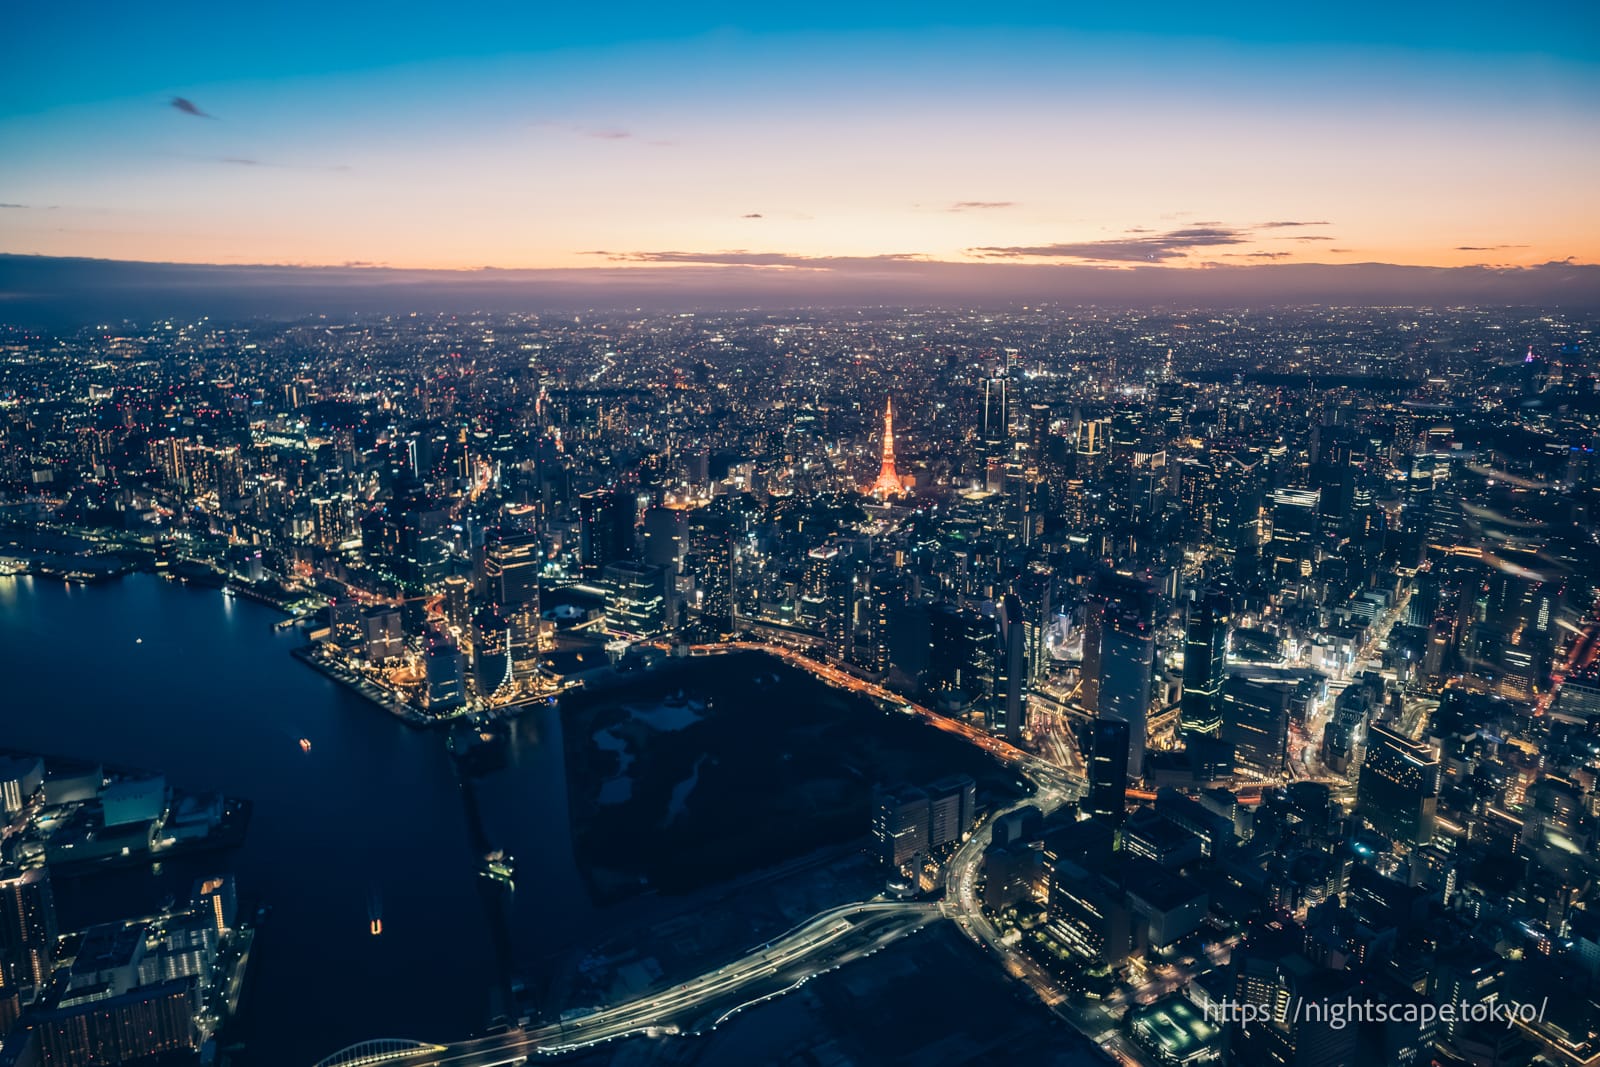 ヘリコプターから撮影した東京夜景